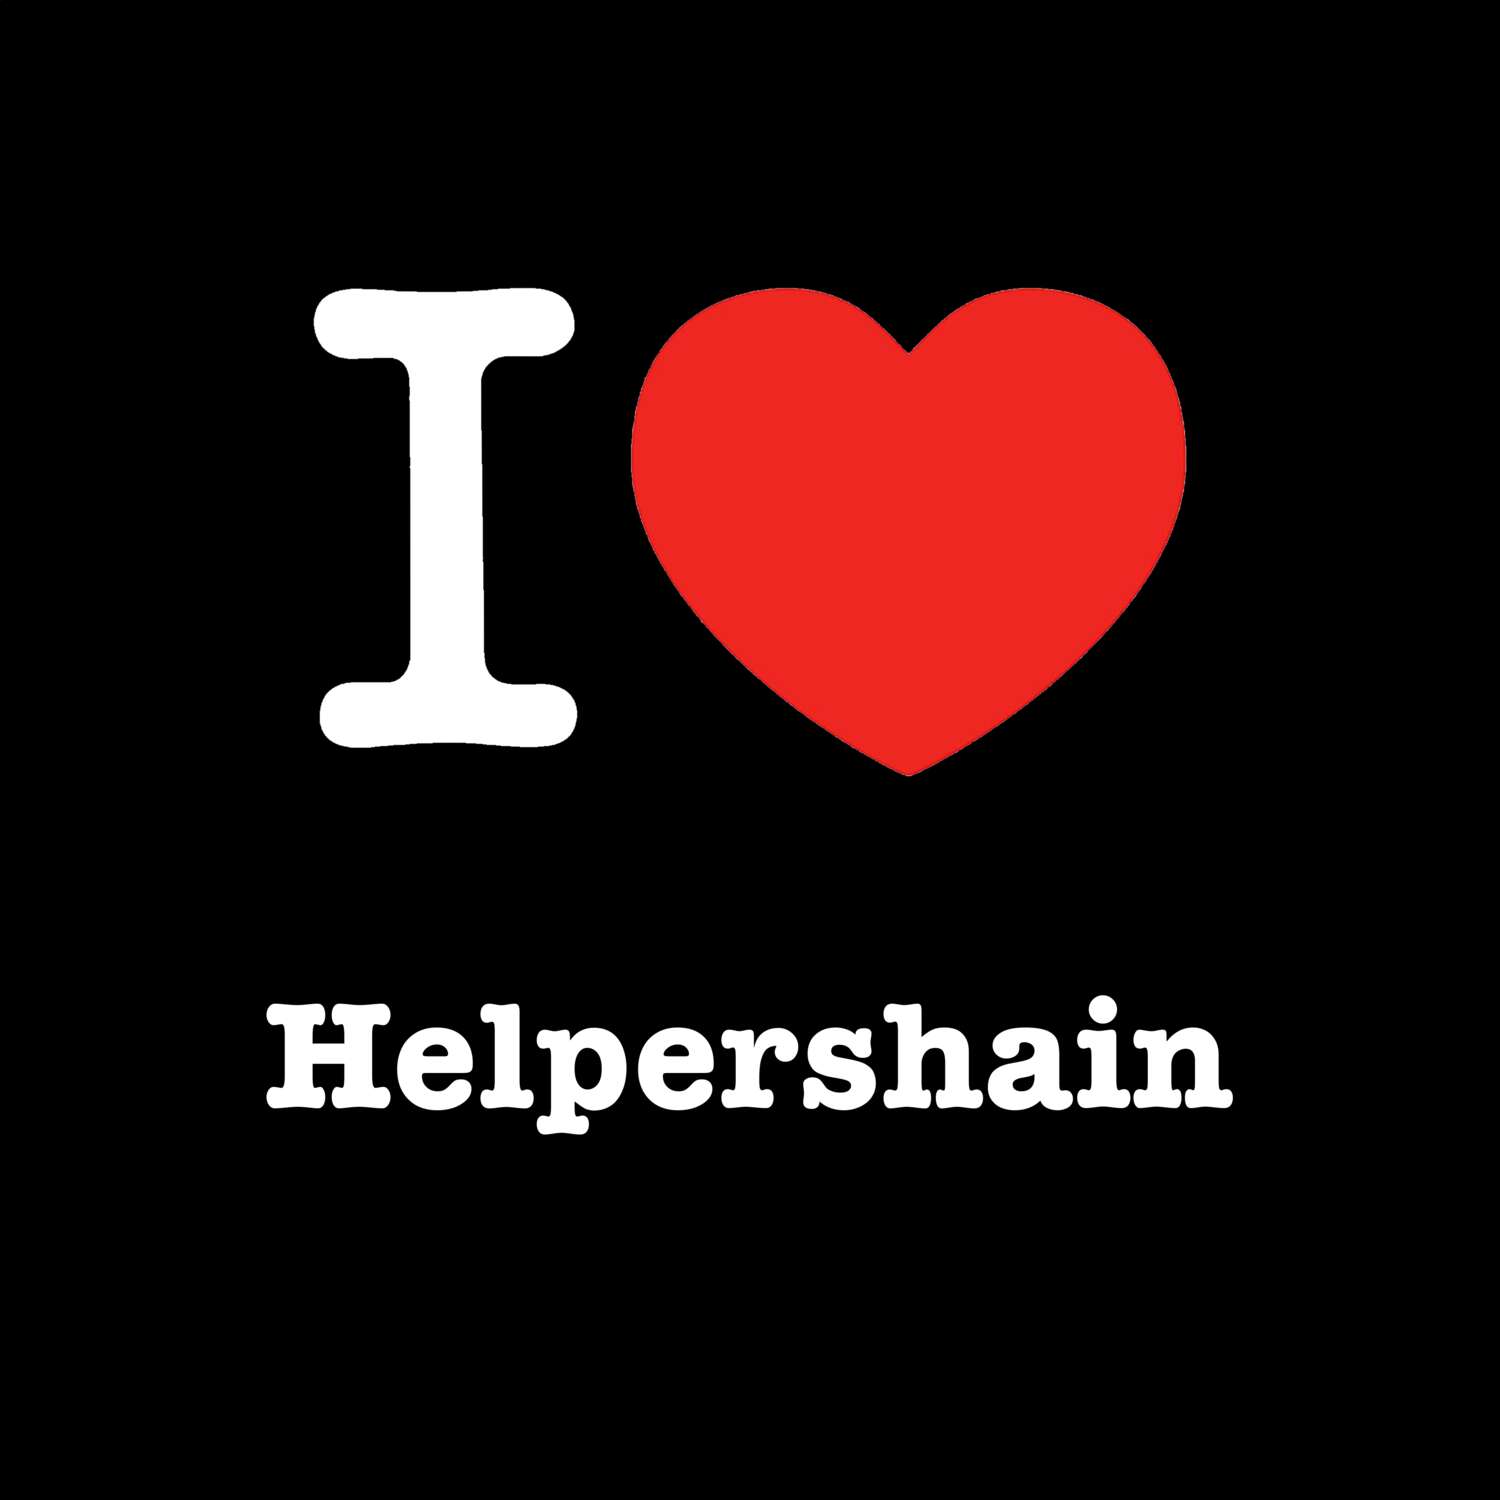 Helpershain T-Shirt »I love«